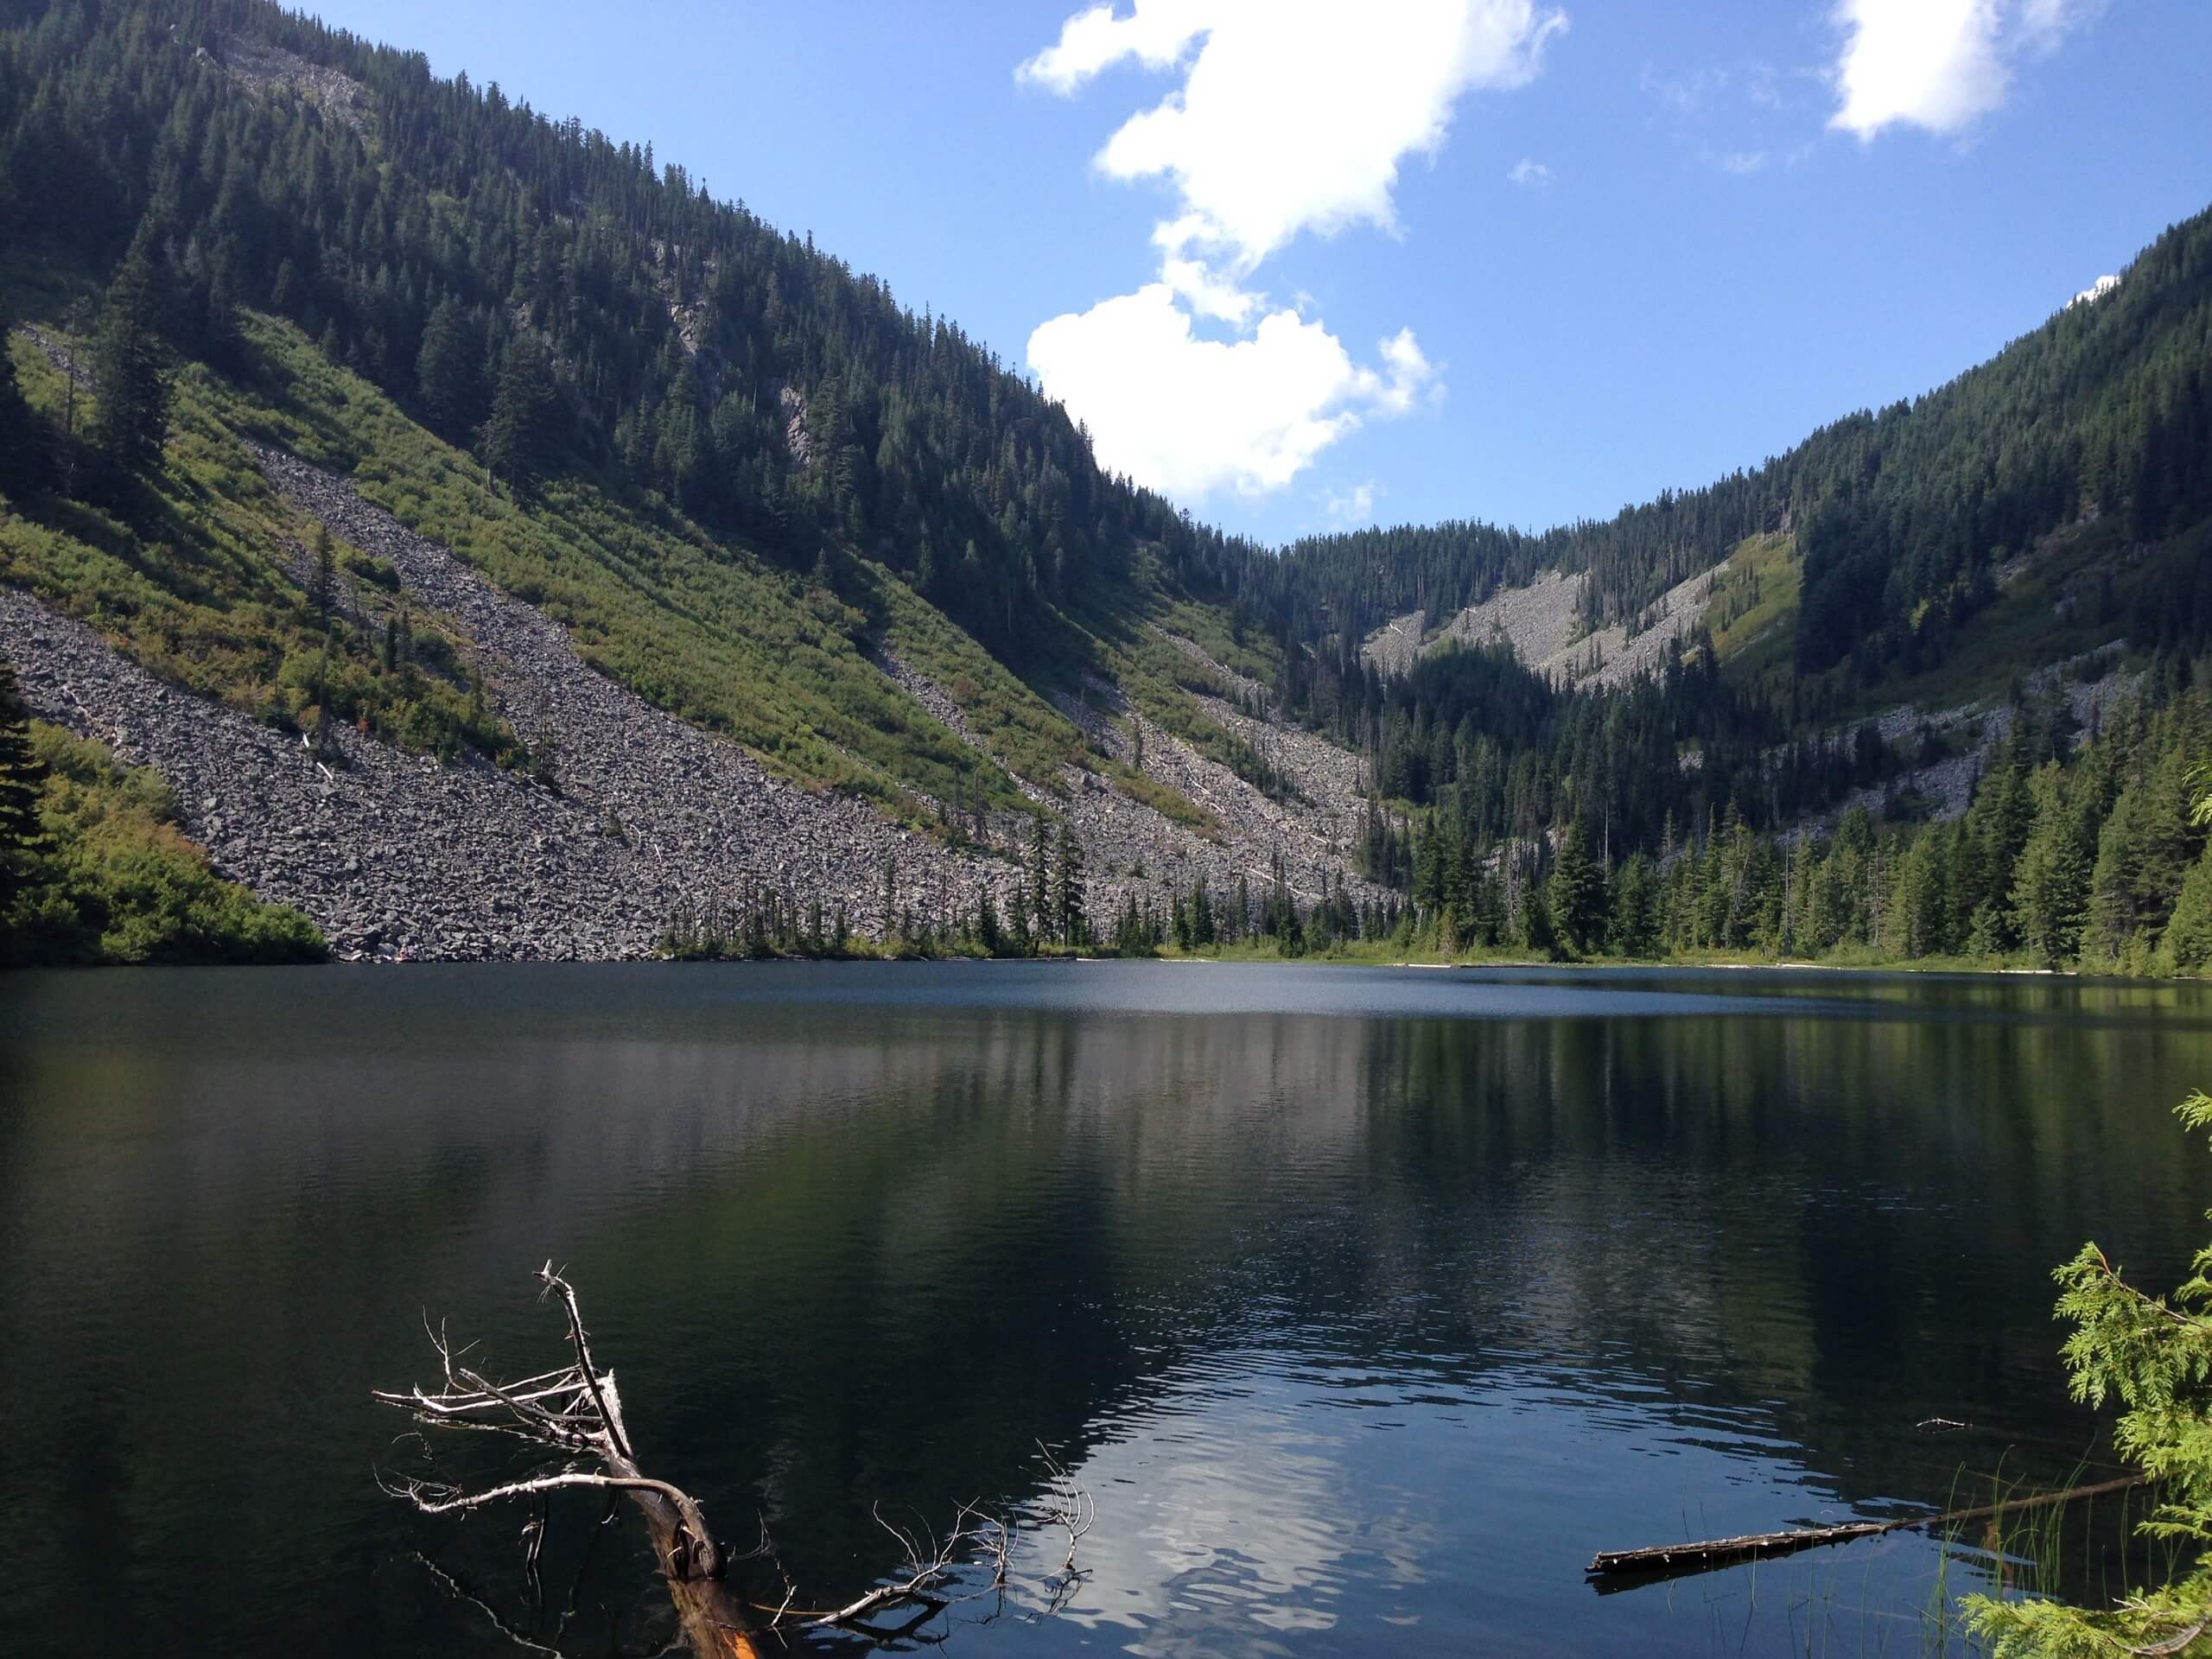 Talapus, Olallie, and Pratt Lakes Hike